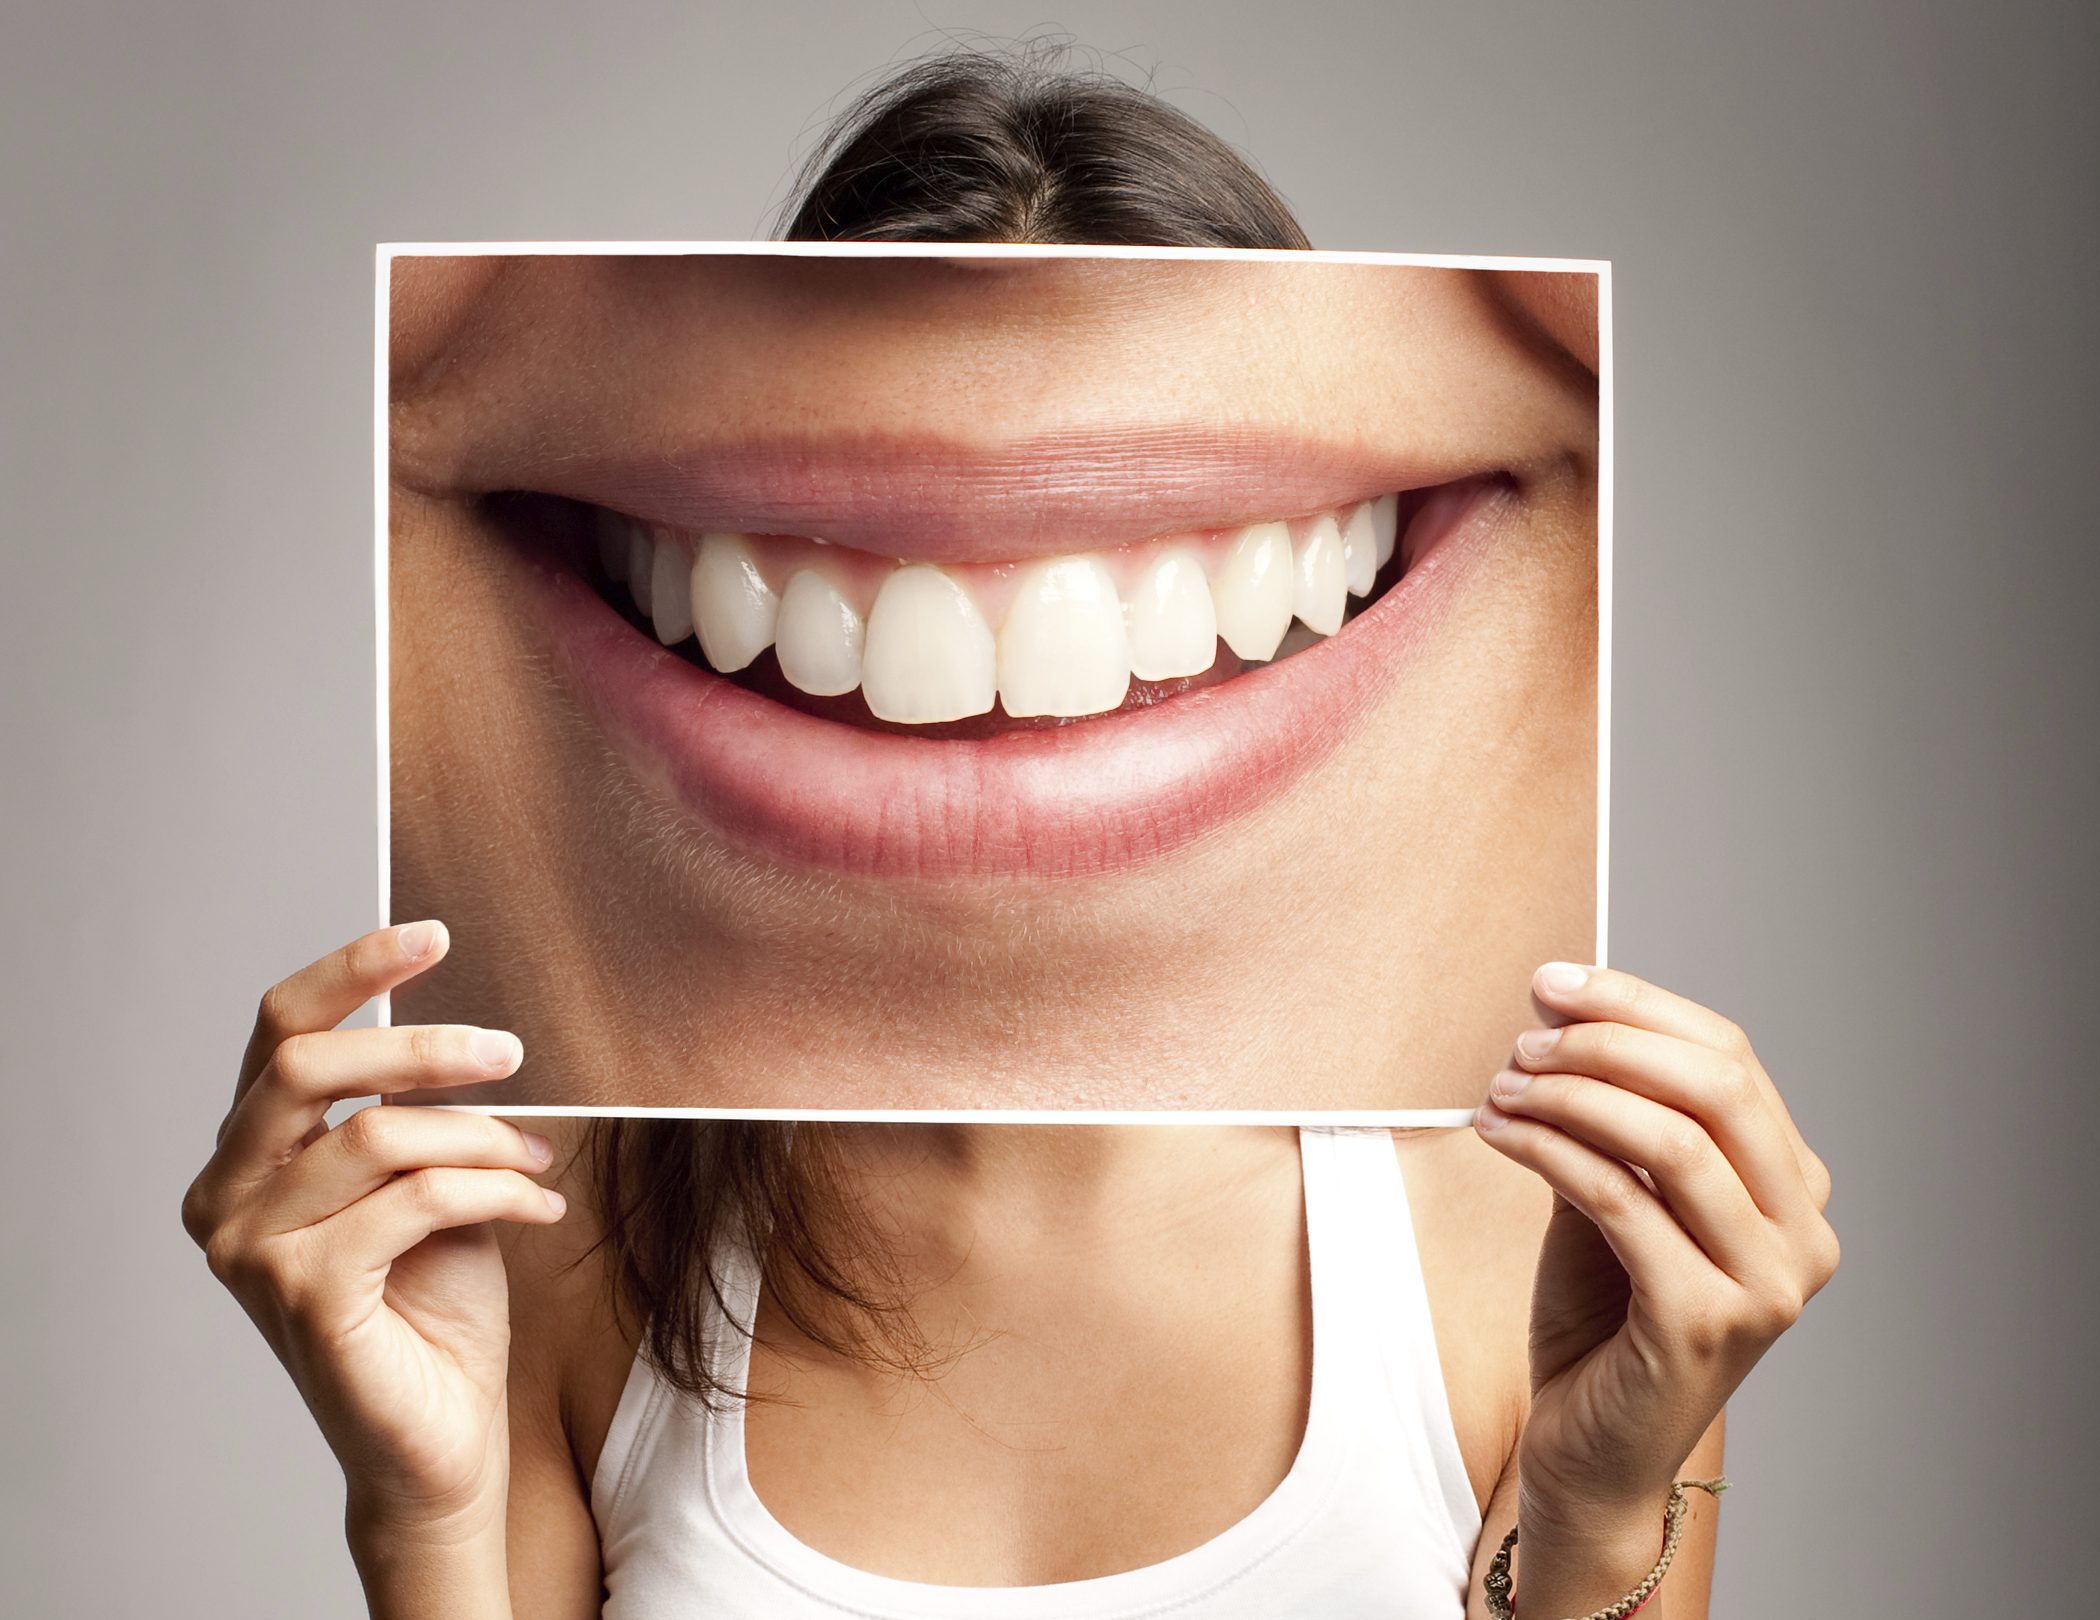 Tipps fürs Zähneputzen